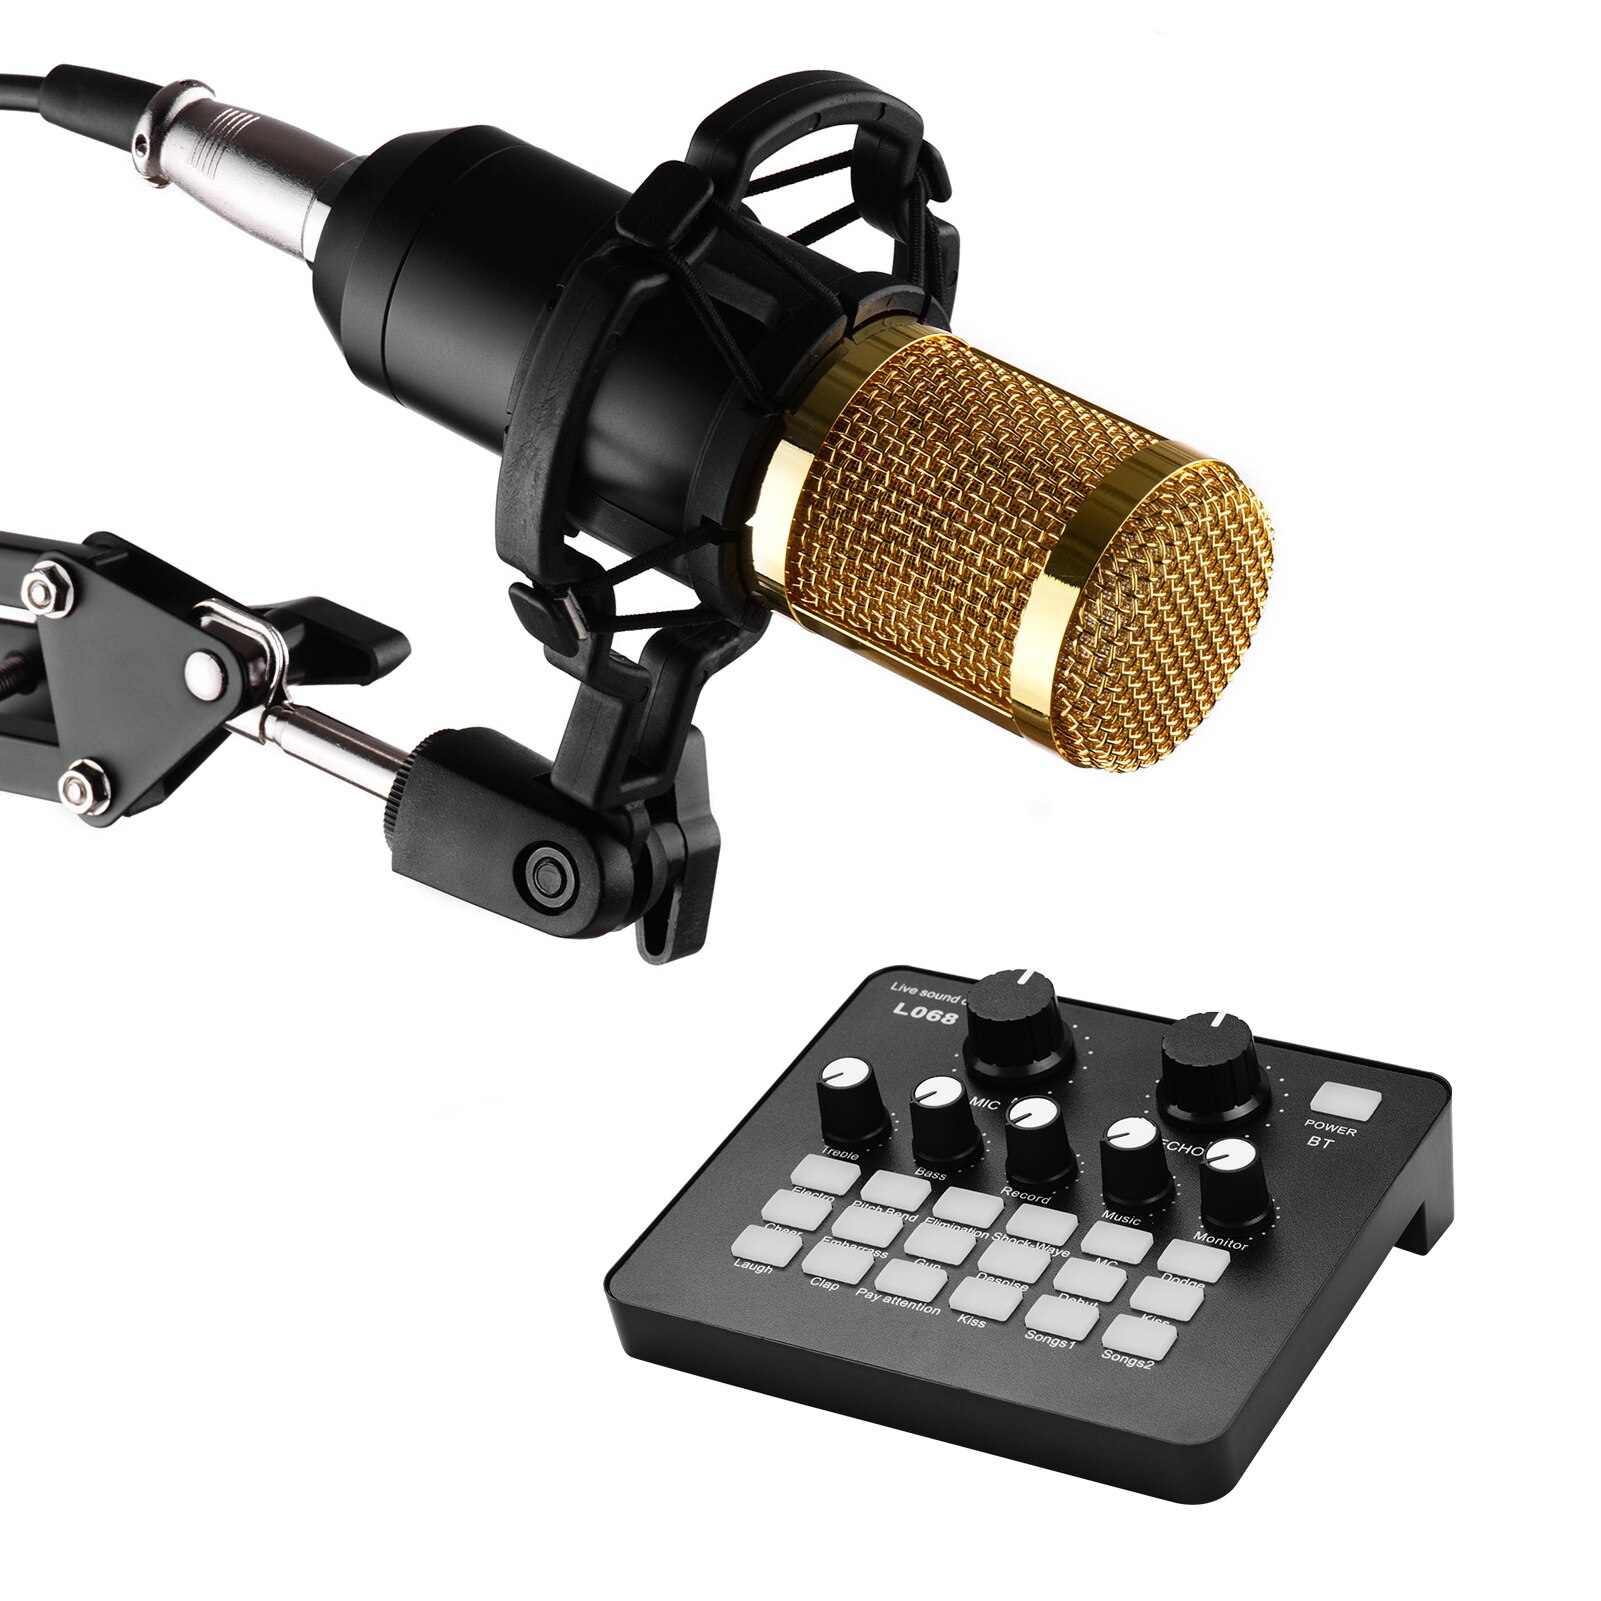 Professionele Broadcasting Studio Recording Condensator Microfoon Kit Met Geluidskaart + Mic Voorruit + Shock Mount + Schorsing